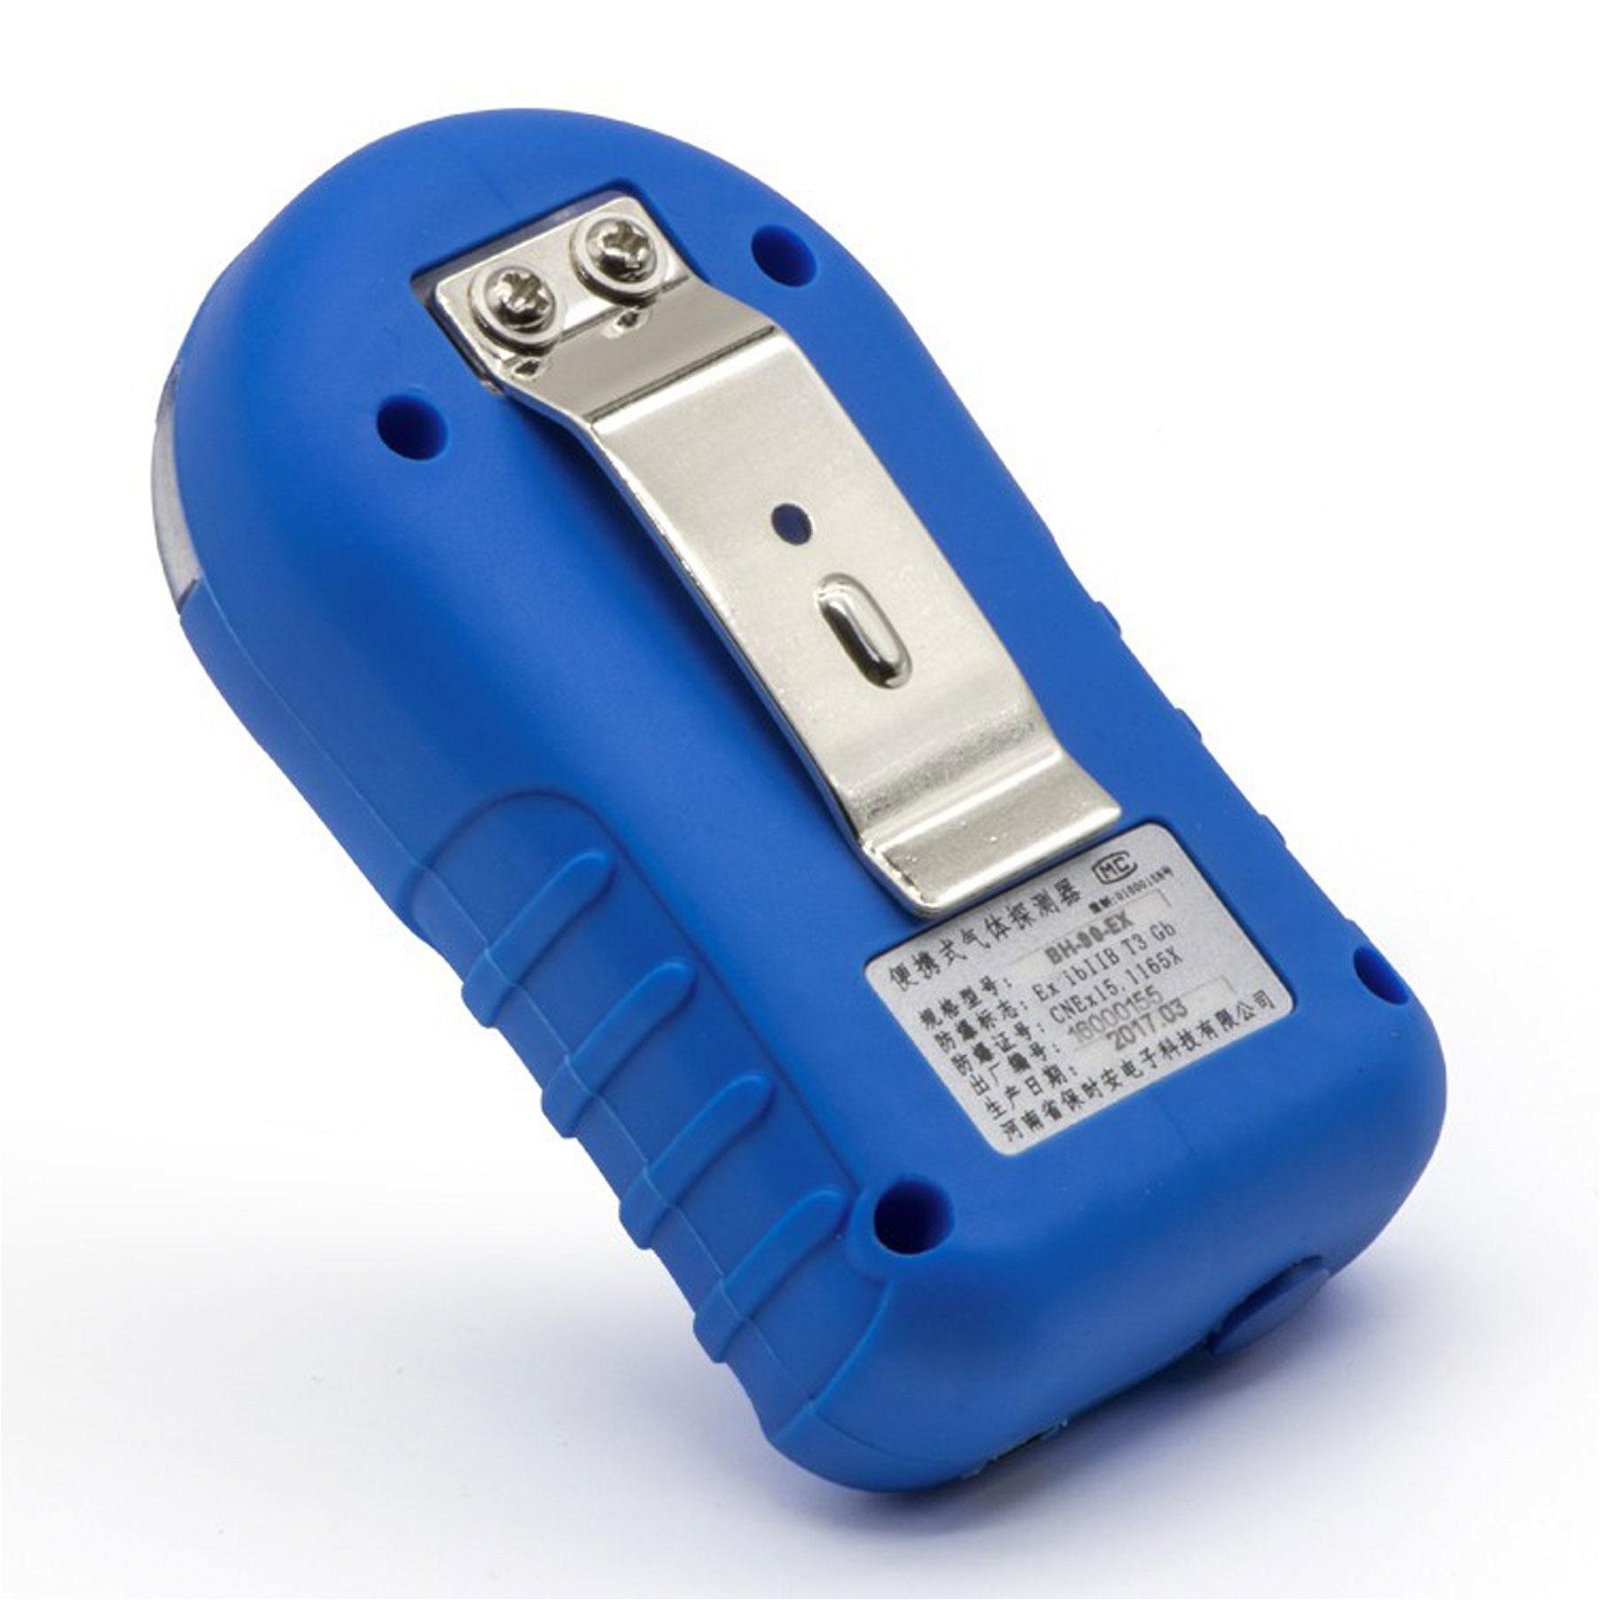 Portable CO Gas Detector BH-90 Industrial Carbon monoxide Gas Alarm detector 2